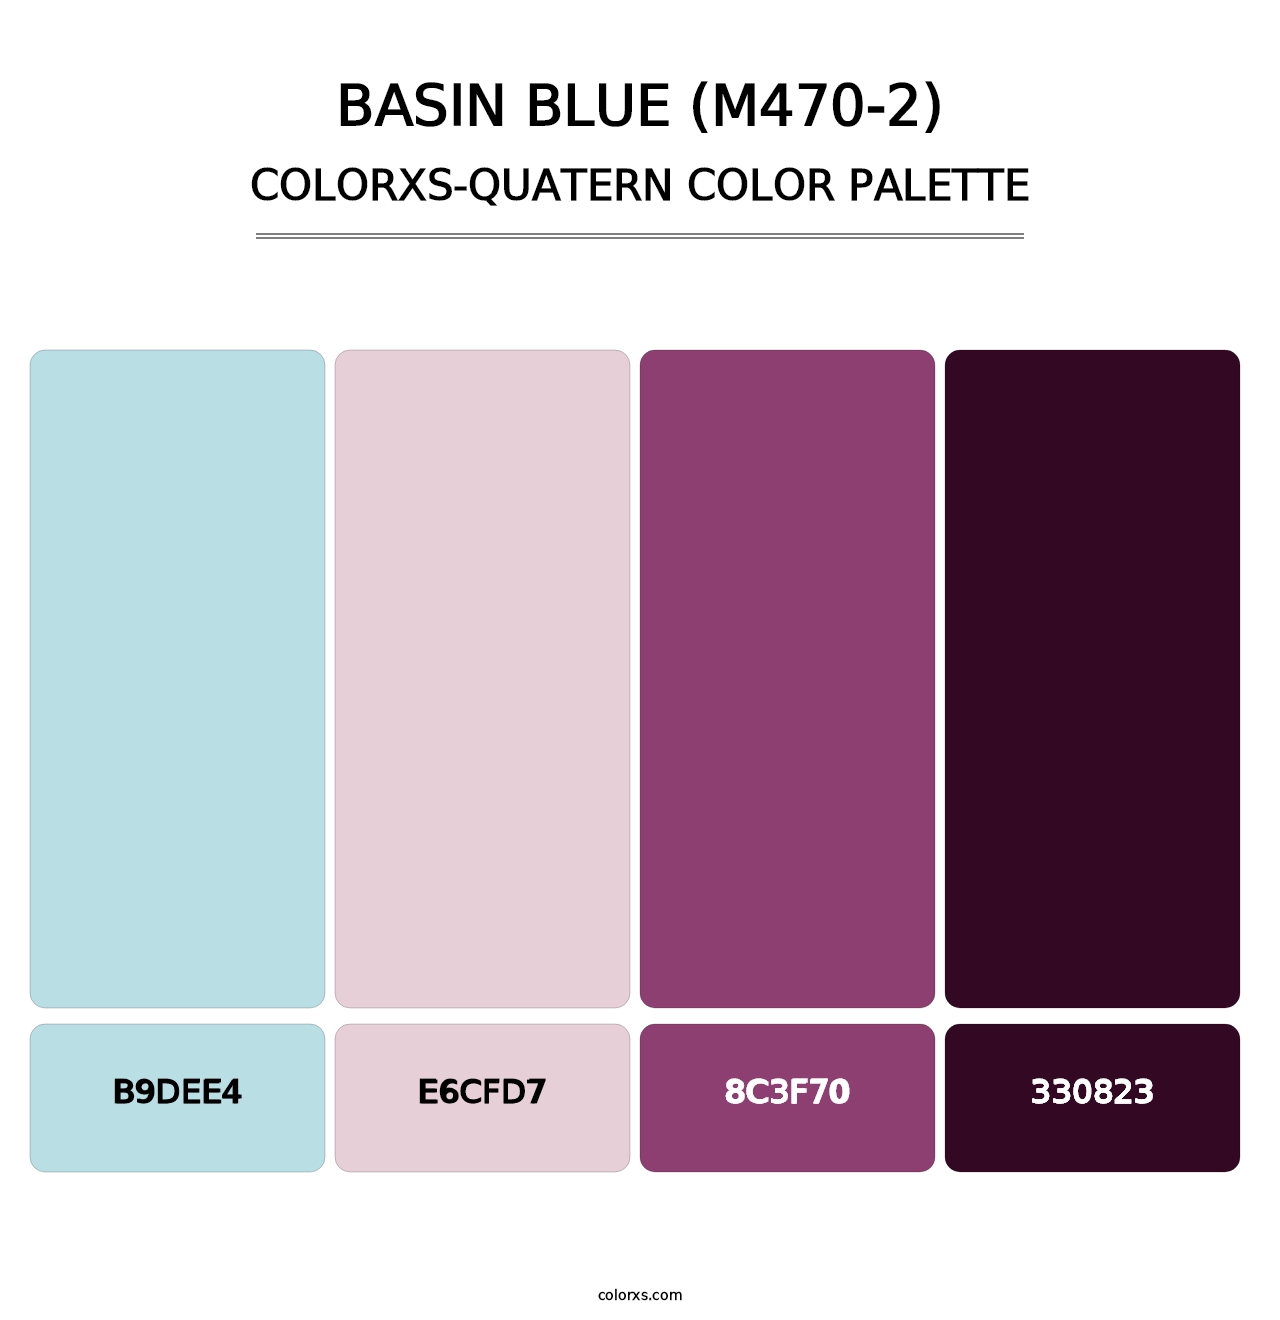 Basin Blue (M470-2) - Colorxs Quatern Palette